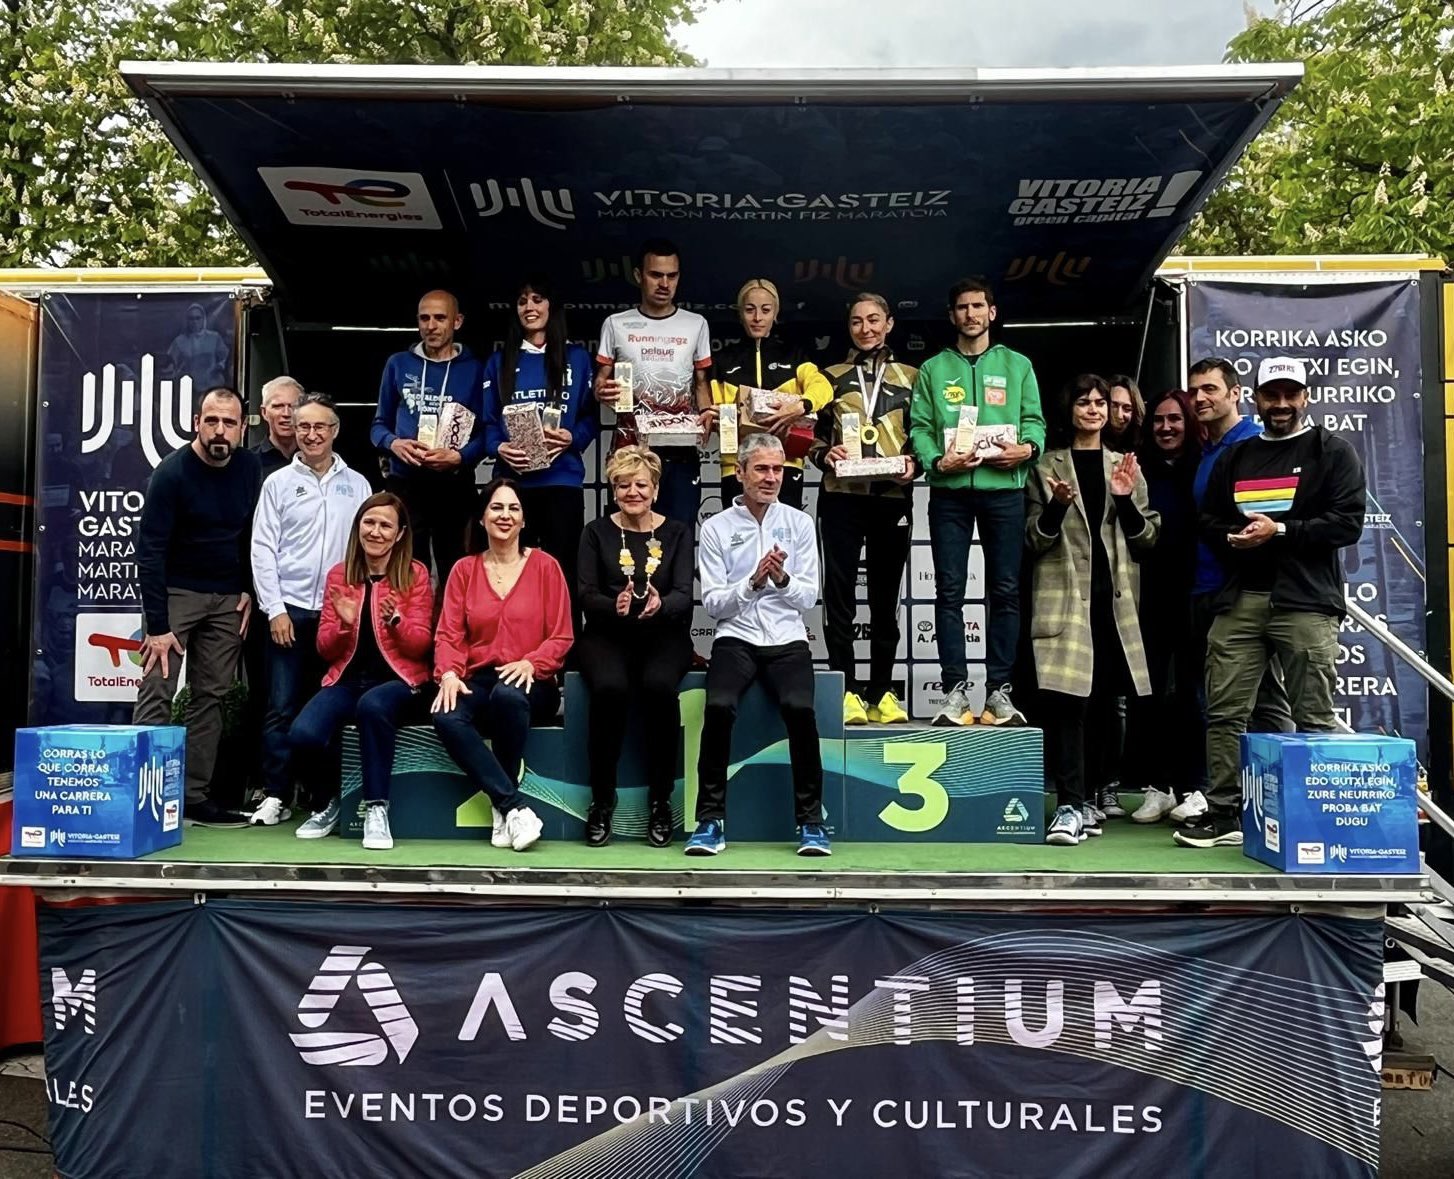 Vencedores en la Maratón Martín Fiz de Vitoria – Norte Exprés | Noticias de Vitoria-Gasteiz y Álava.